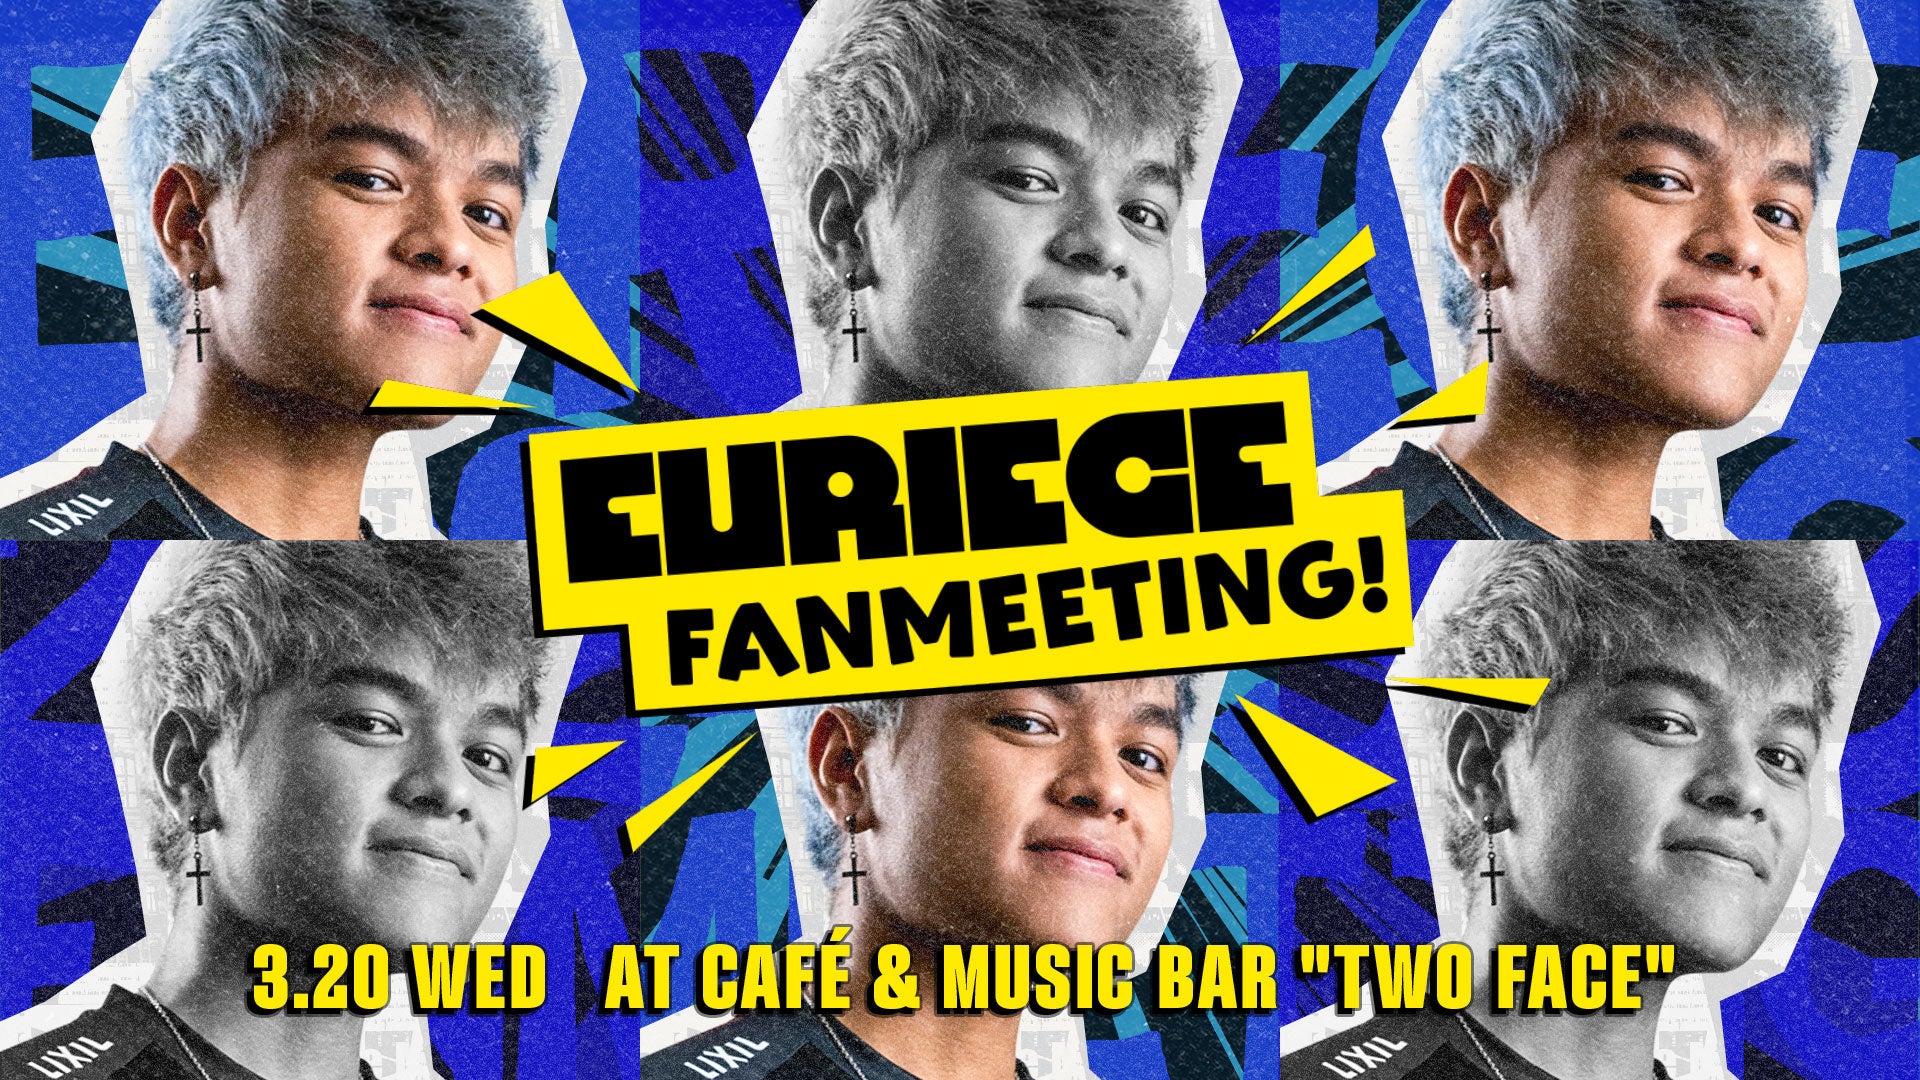 eスポーツチームSCARZ、日本で人気の海外ストリーマー・Eurieceのファンミーティングイベントを渋谷のCafé & Music Bar “TWO FACE”で開催！